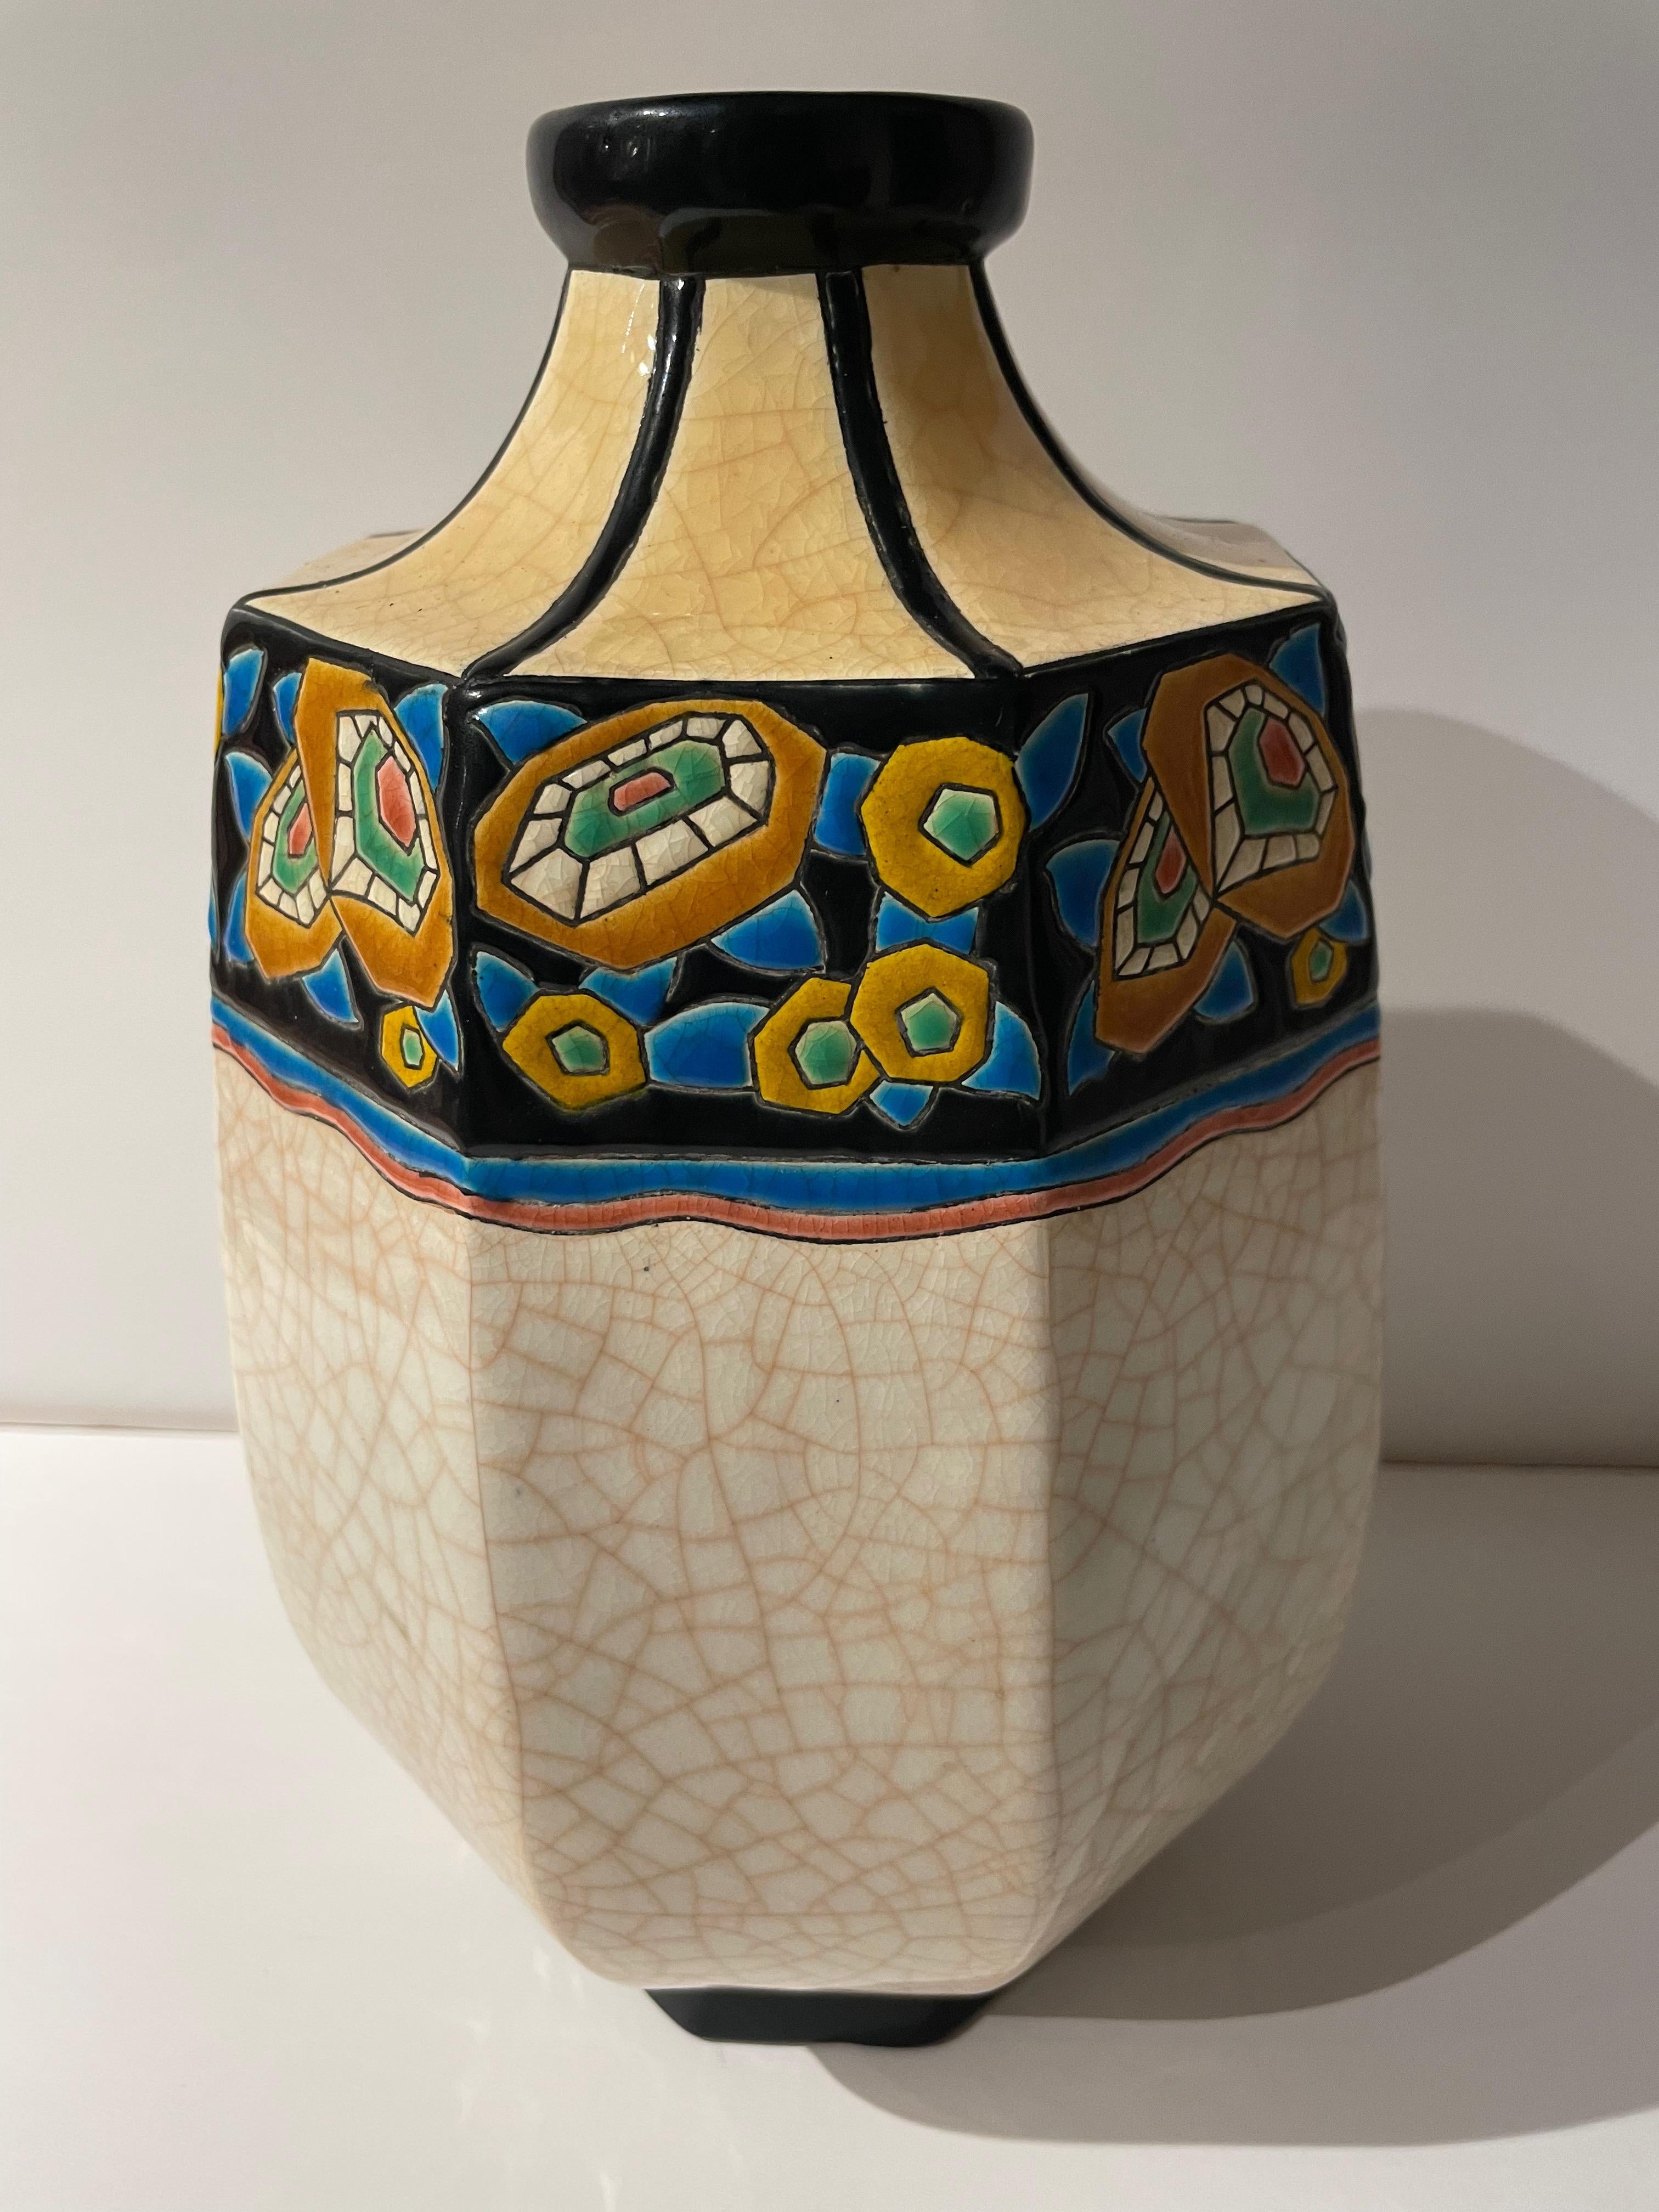 Eine Art-Deco-Vase von Longwy aus Frankreich. Dieses Stück ist ein großartiges Beispiel für die Craquelé- und die Keramik-Cloisonné-Technik. Die achteckige Form zeigt acht Tafeln, die mit geometrischen, stilisierten Blumen verziert sind.

Longwy ist